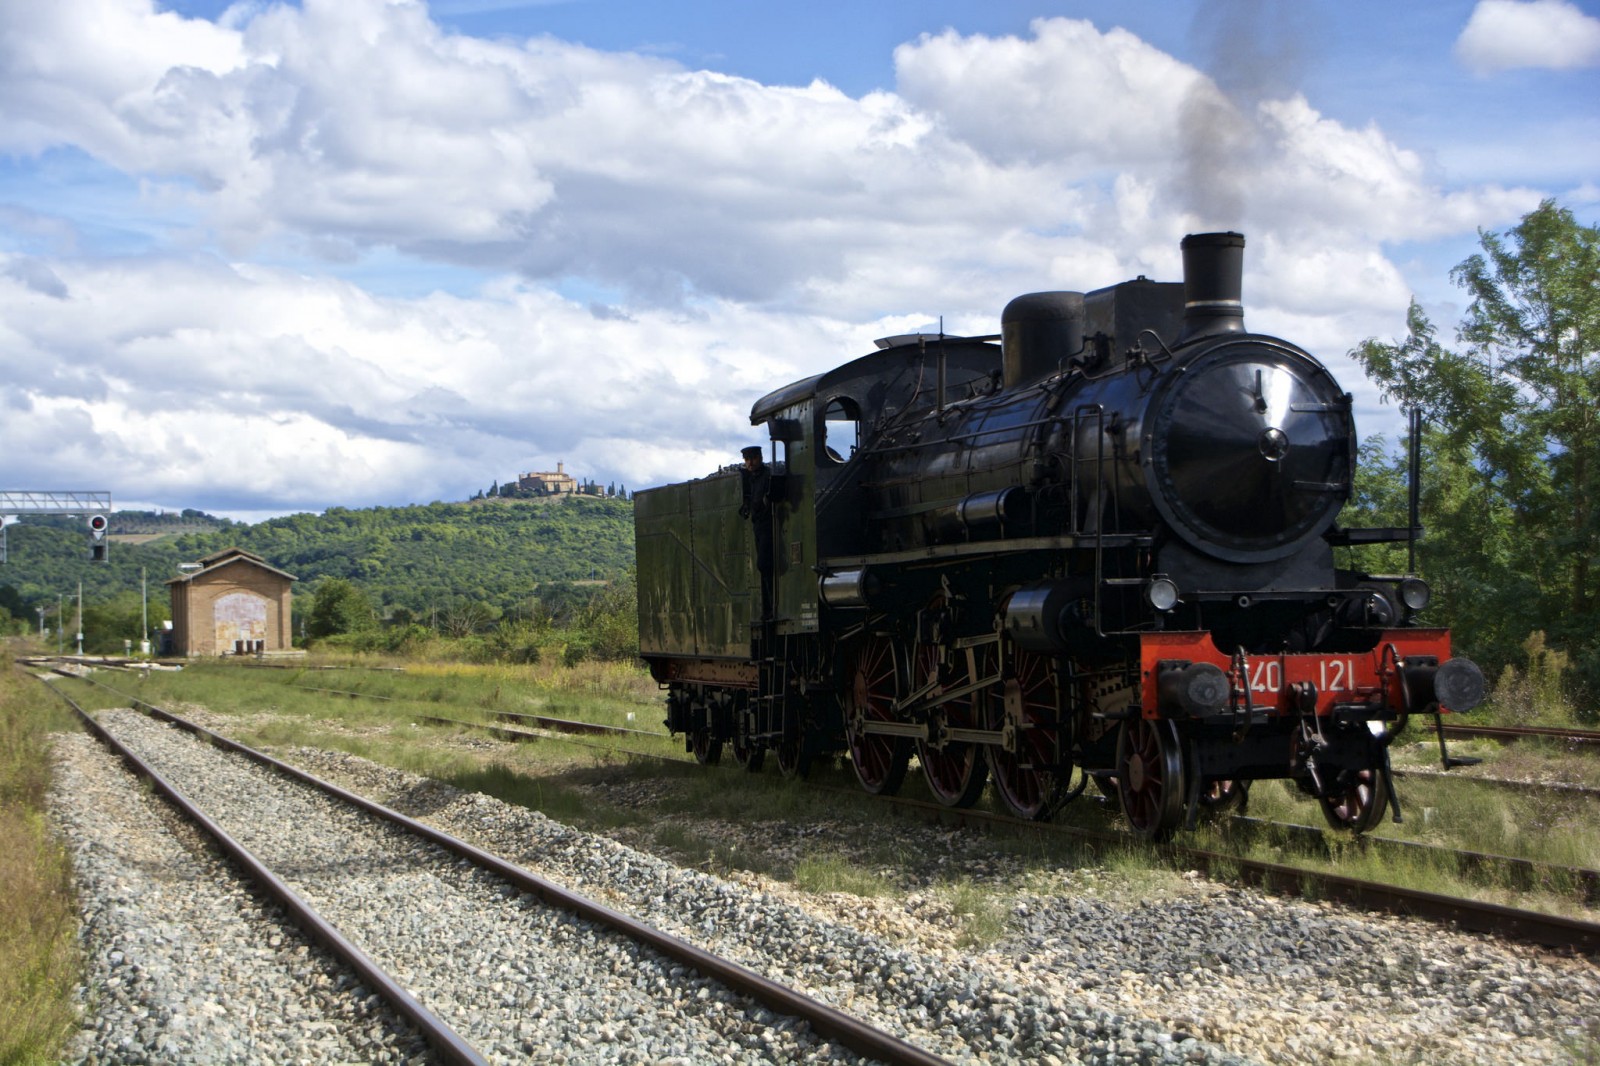 Steam train in Monte Antico